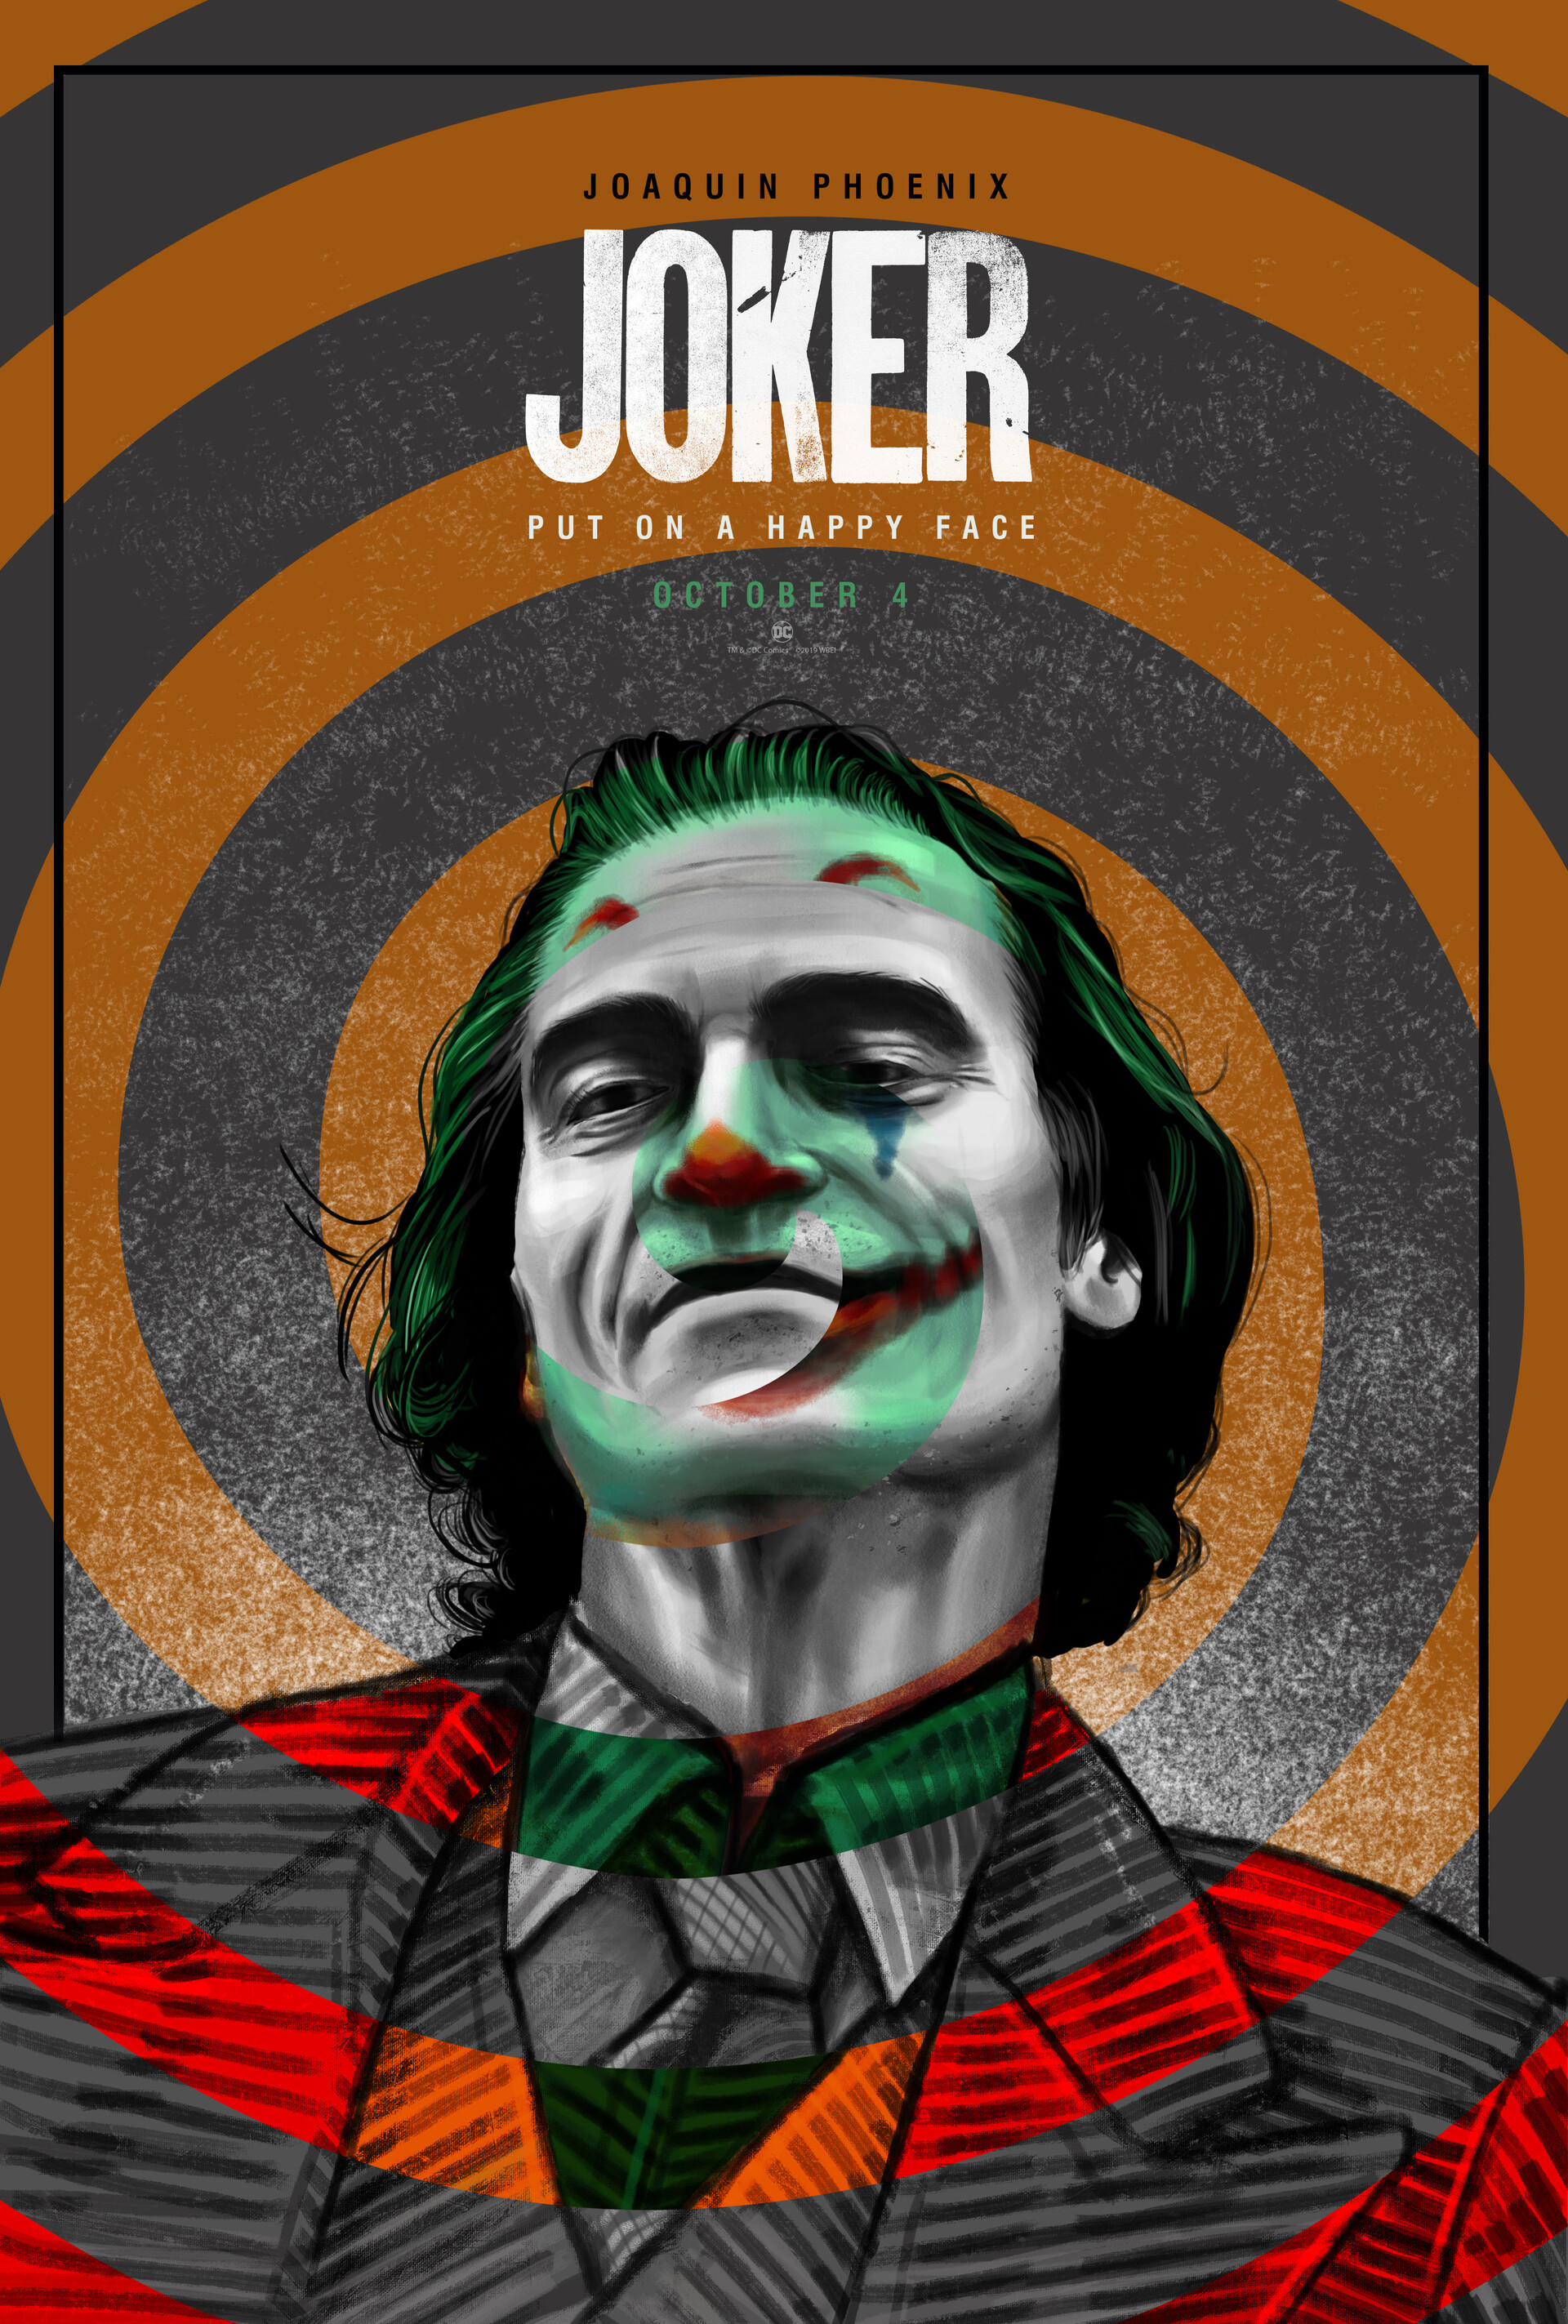 ArtStation - Joker alternative movie poster